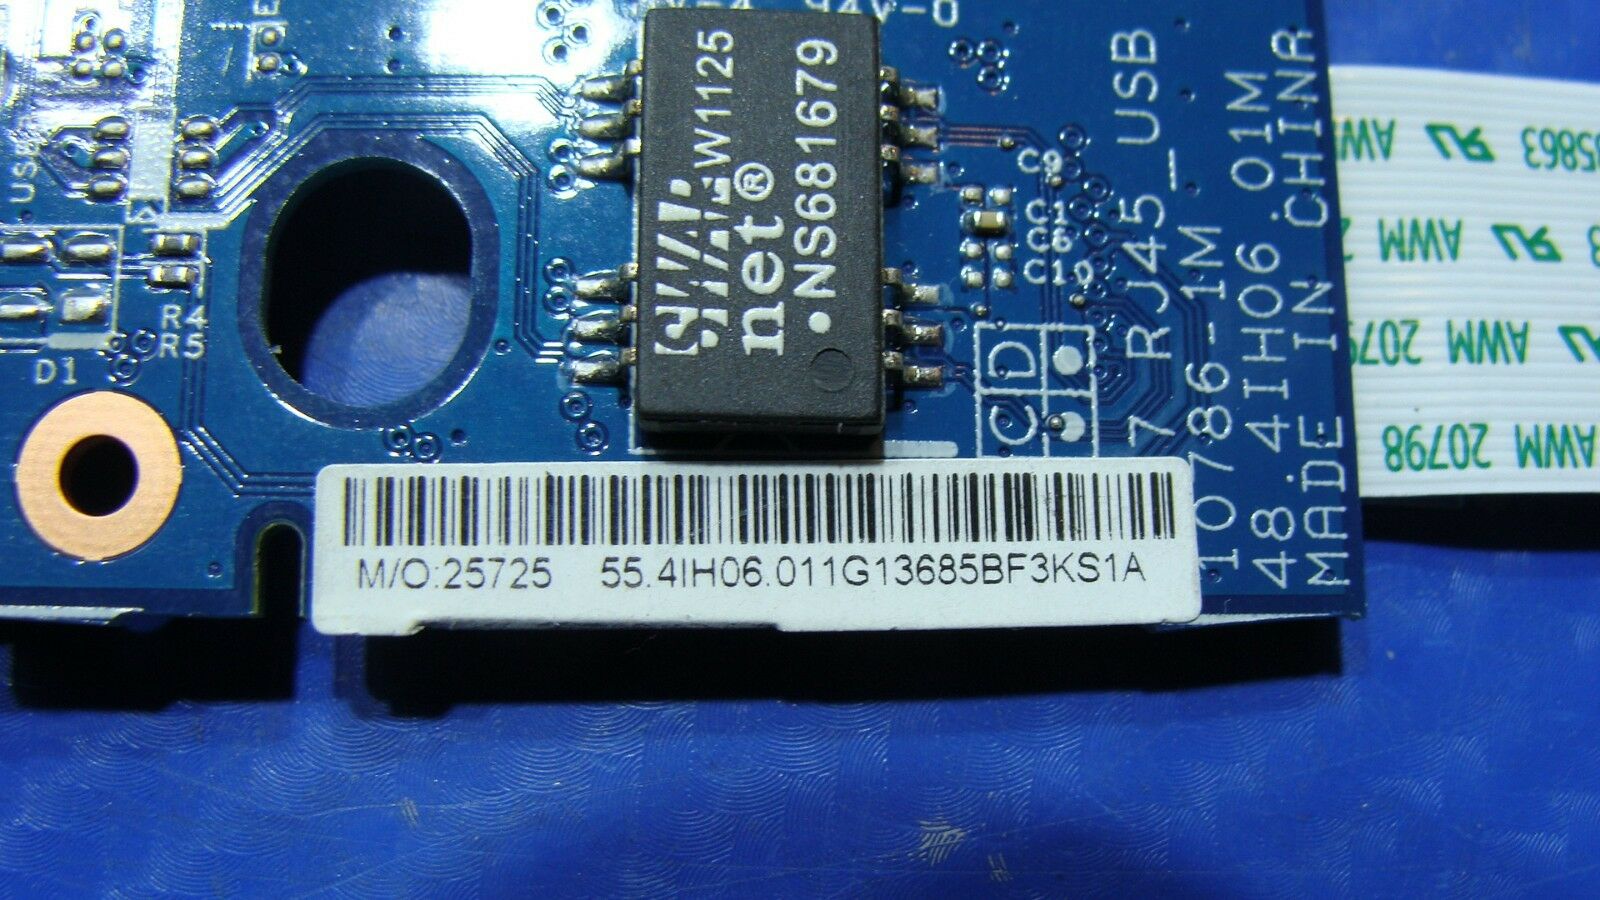 Lenovo IdeaPad V570 15.6